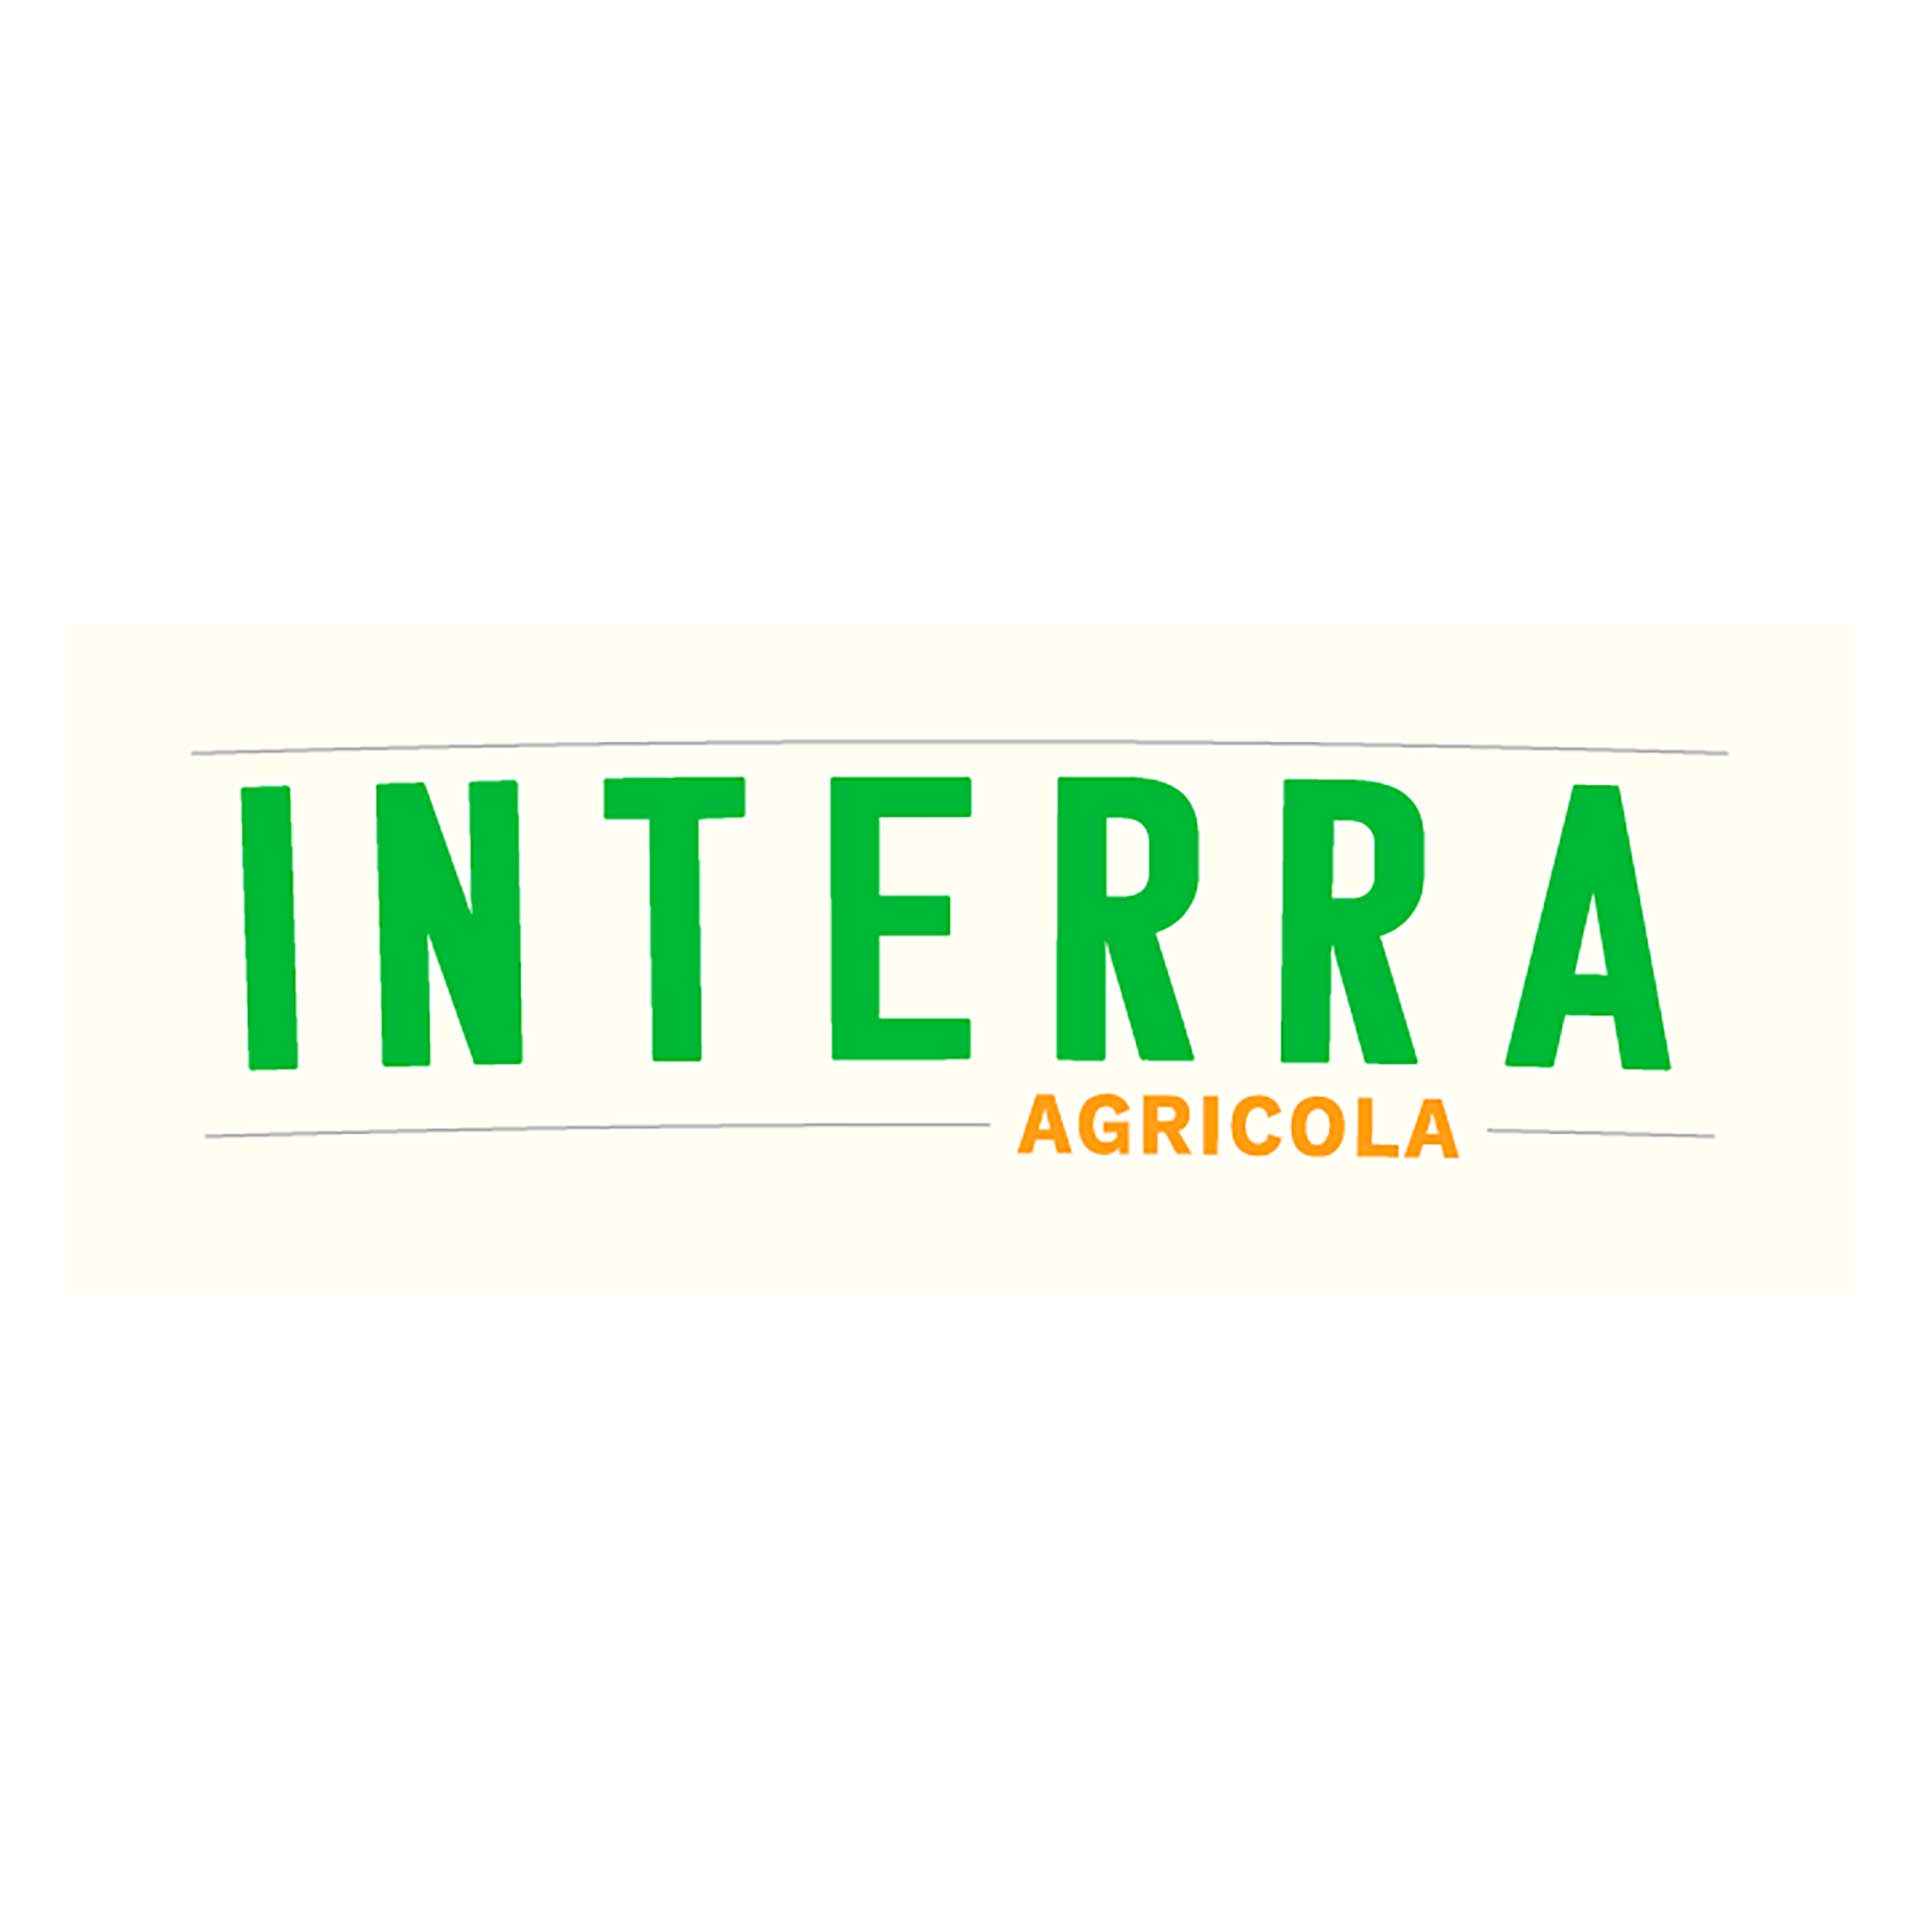 Interra Agricola